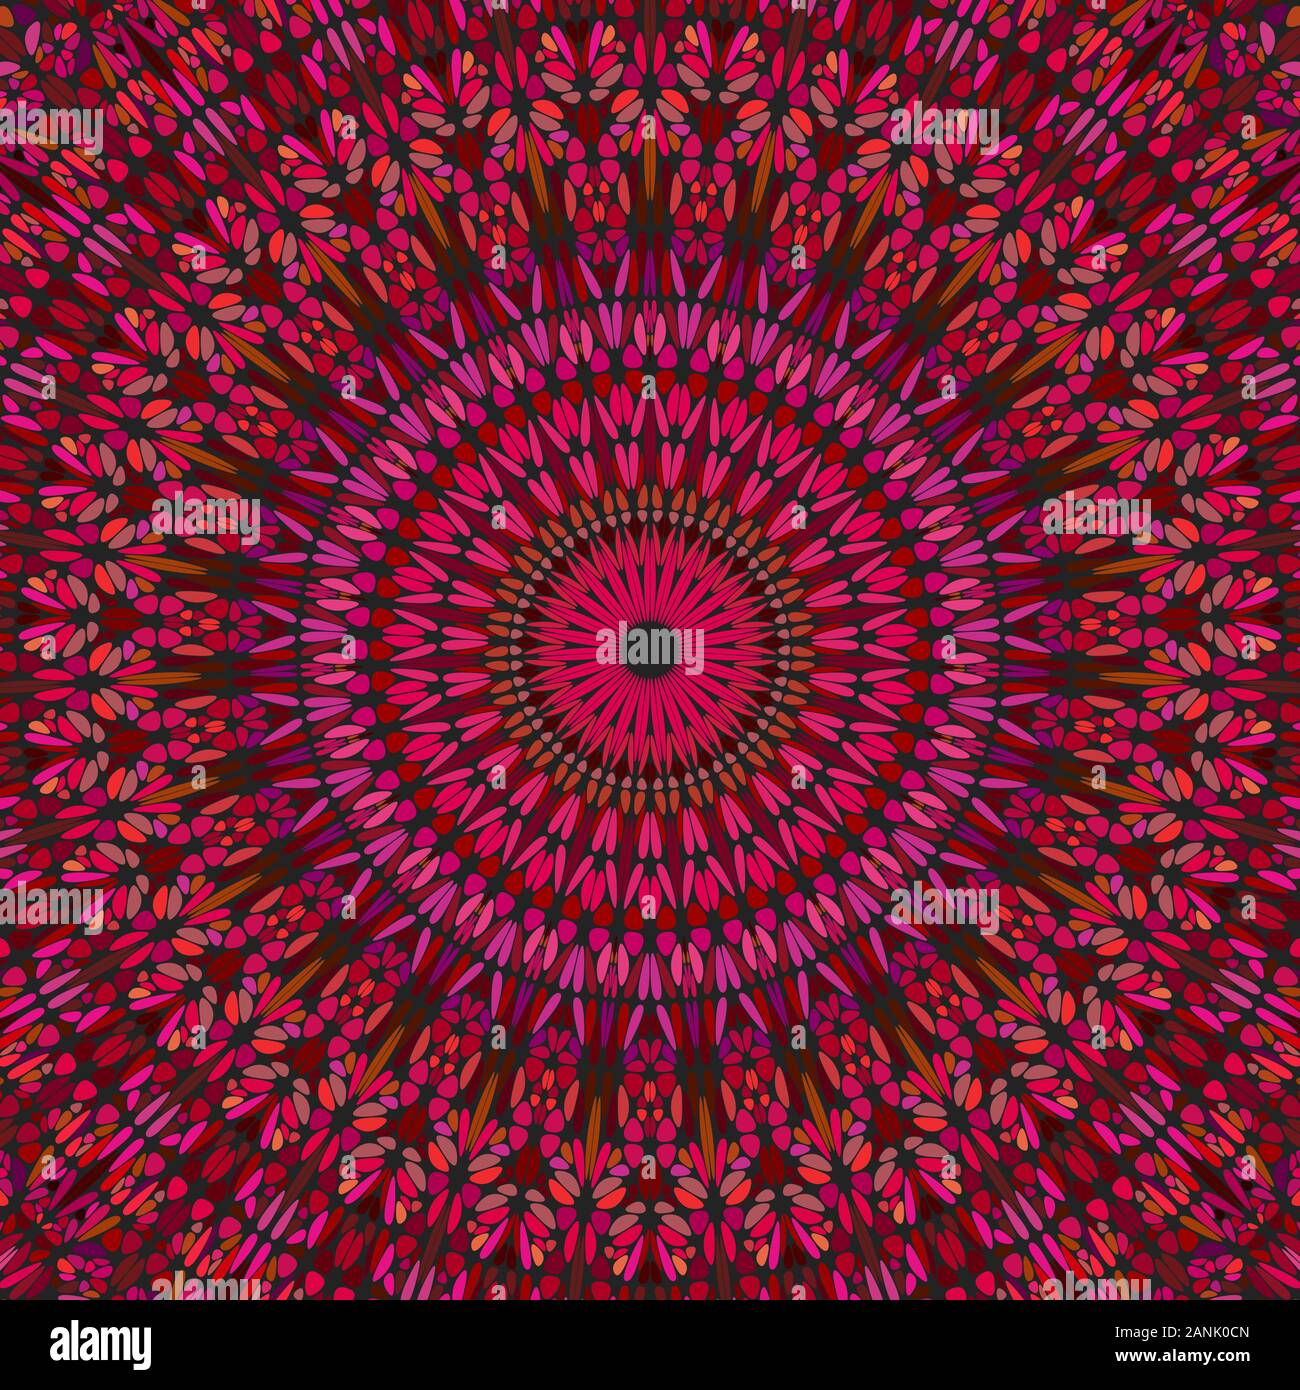 Orientalische dynamische Blume ornament Hintergrund Design - Blumig psychedelisch bunten hypnotisch abstrakte Rundschreiben Vektor Grafik mit geschwungenen Formen Stock Vektor